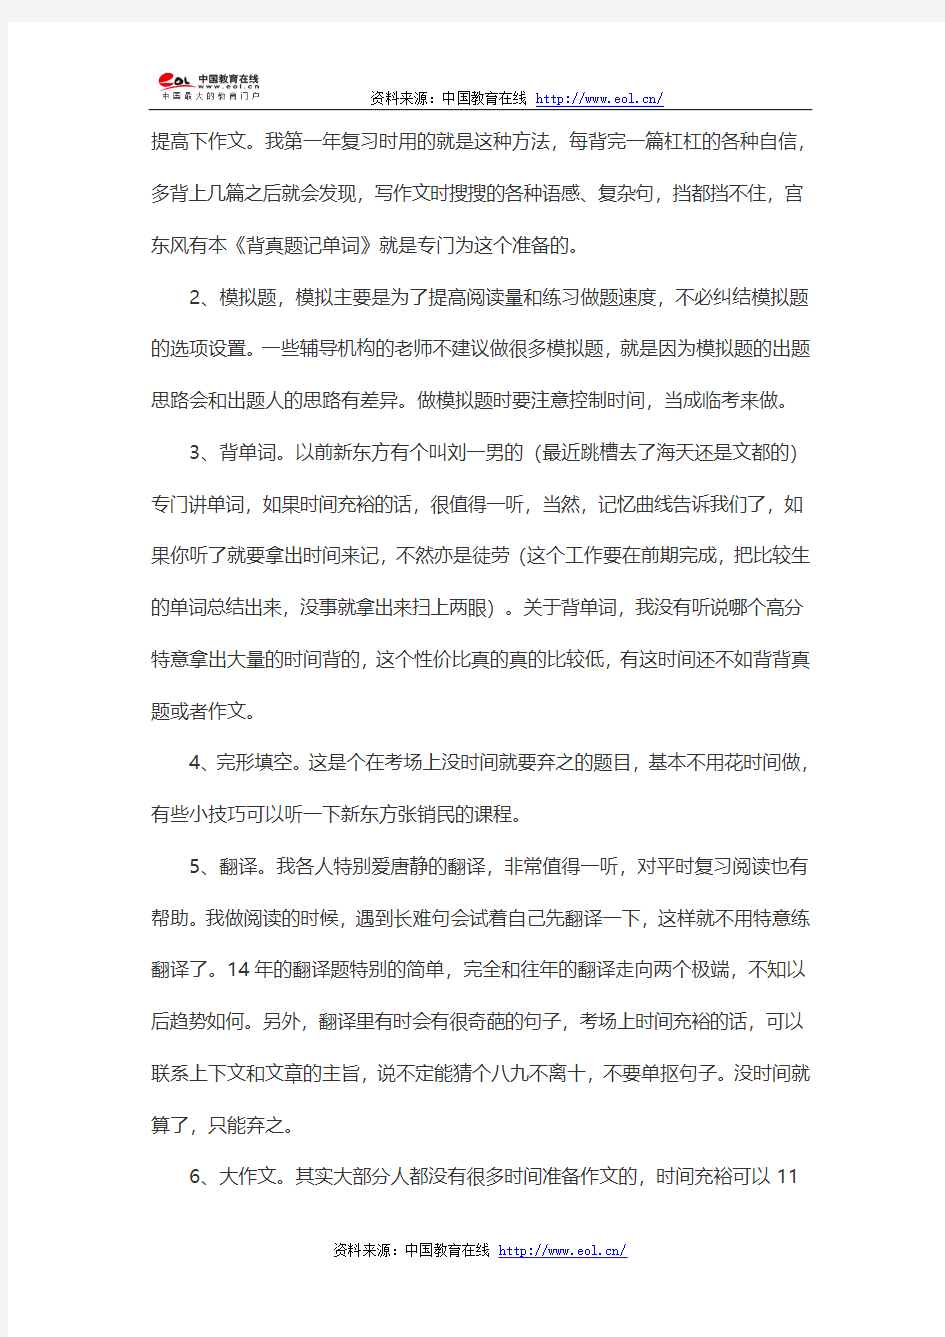 2014年中国政法大学考研经验分享